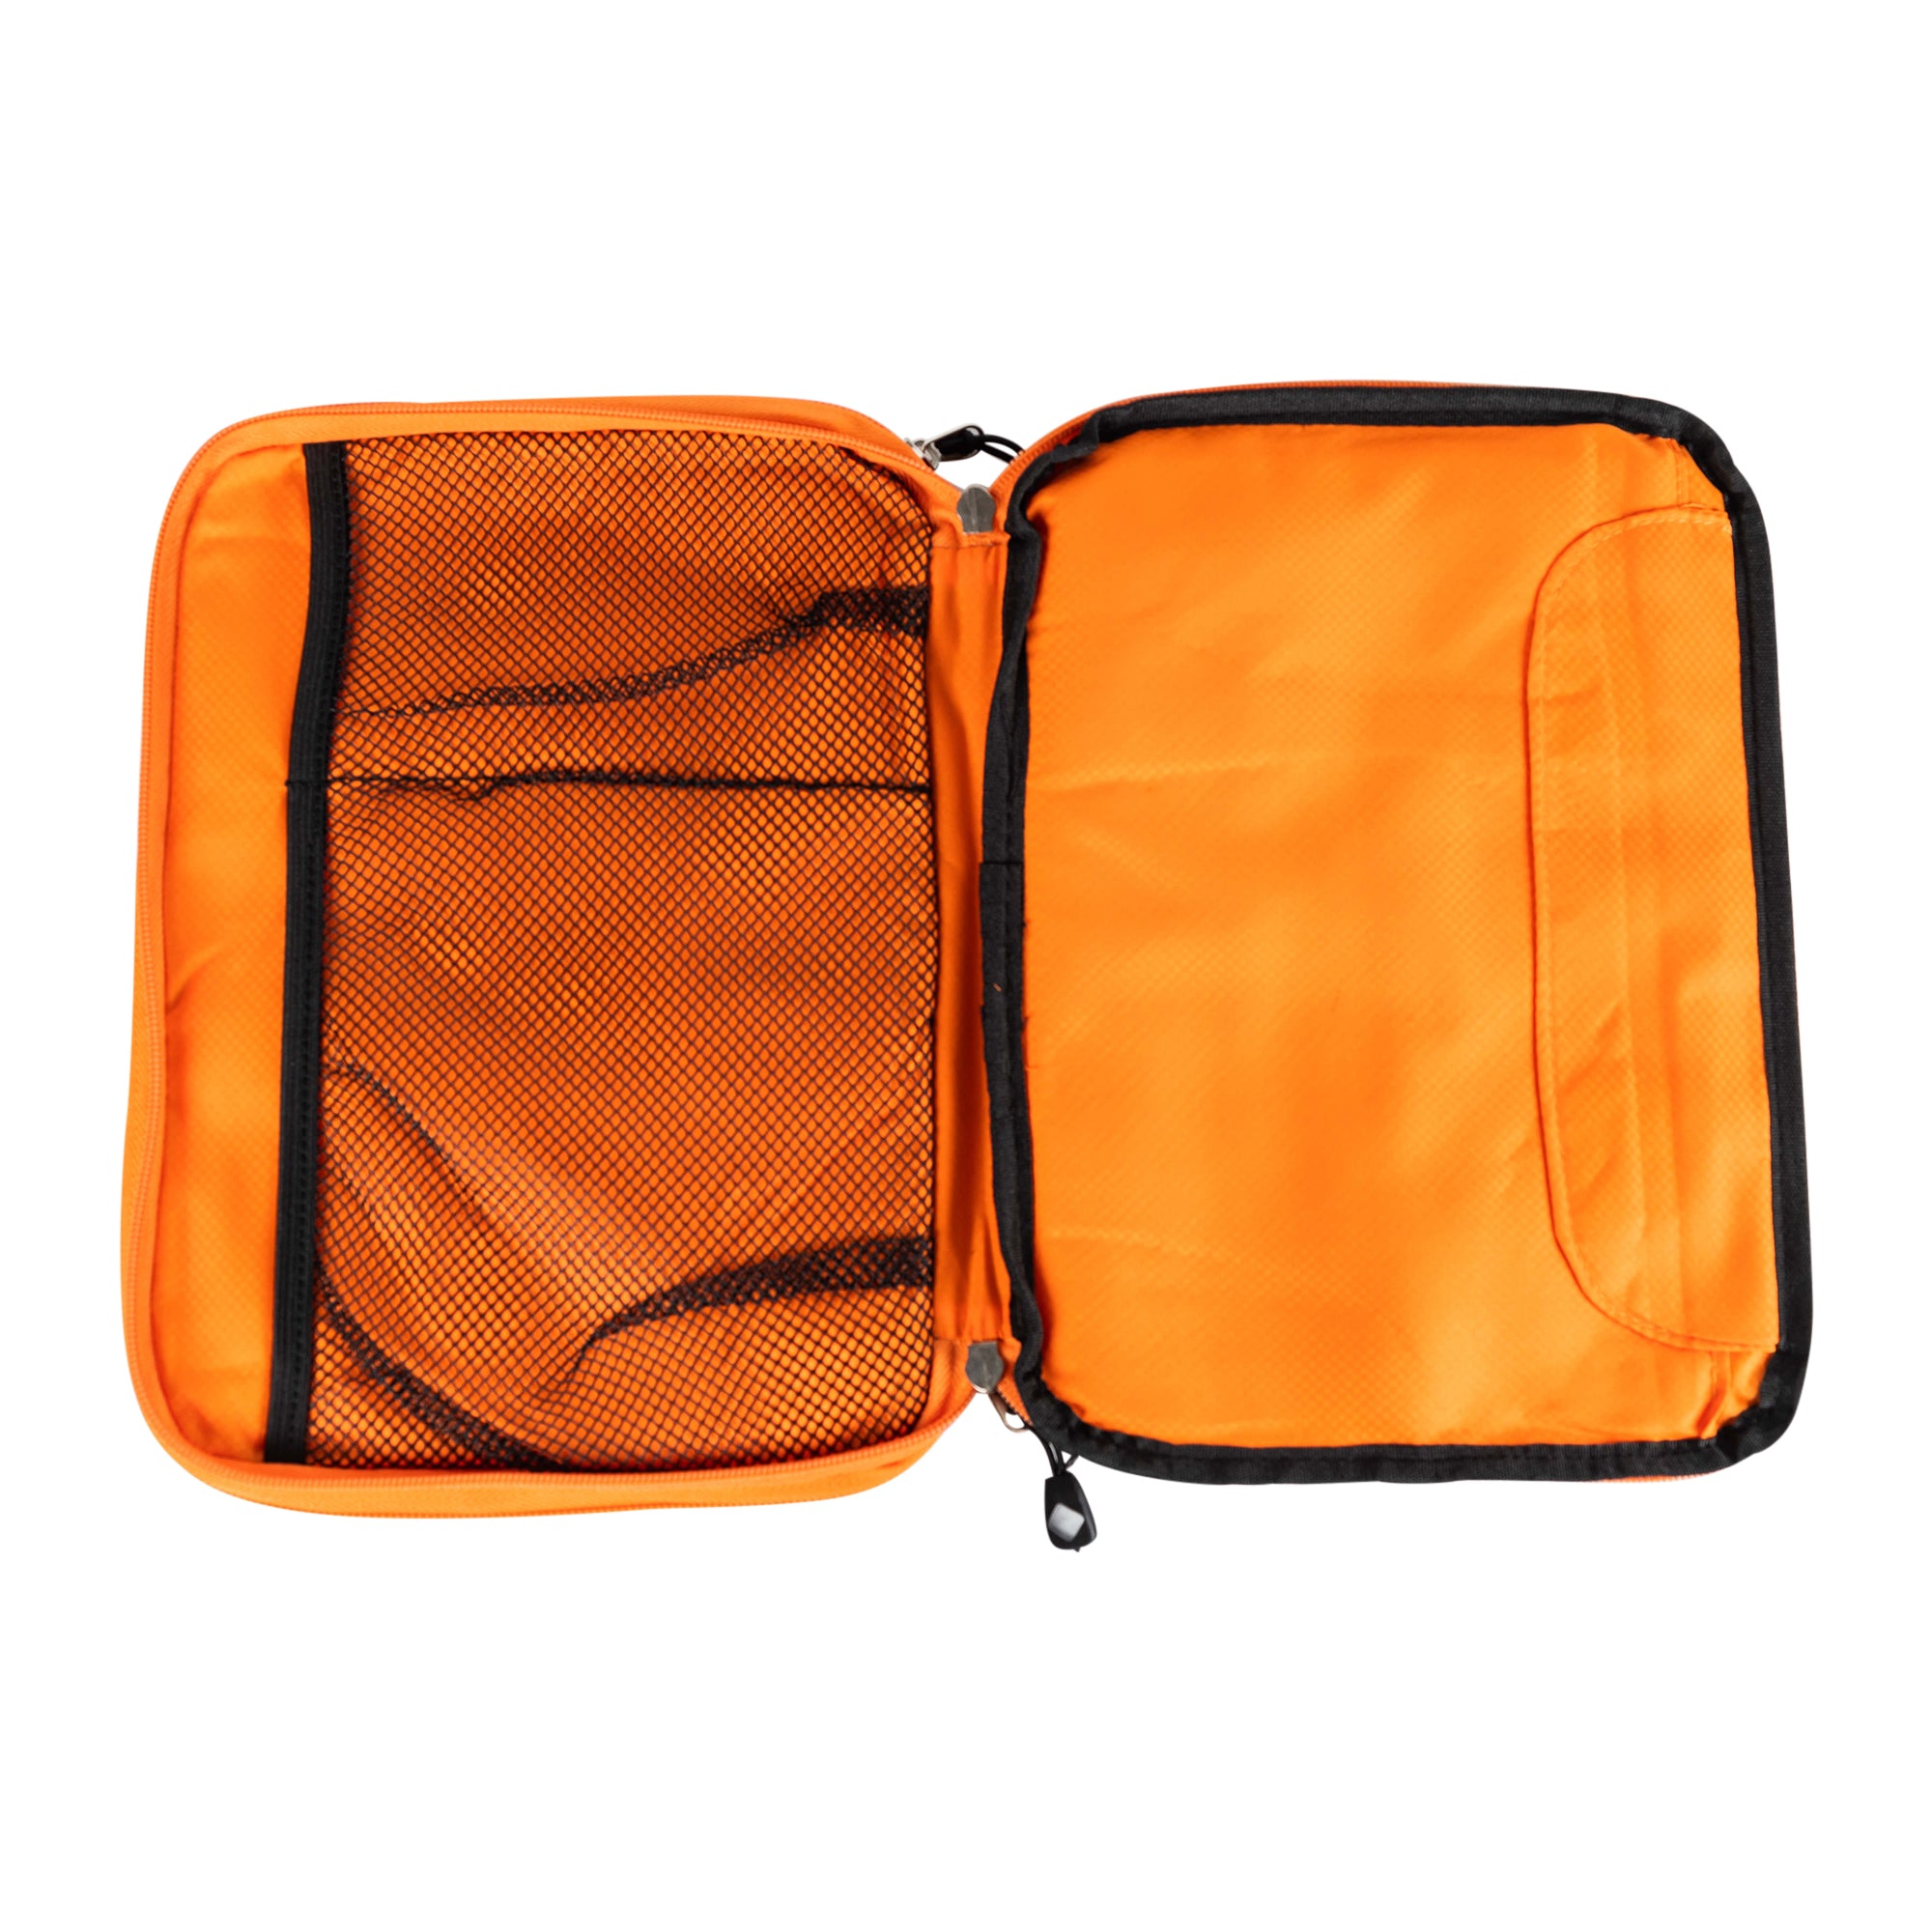 Men's Double Layer Waterproof Tech Bag